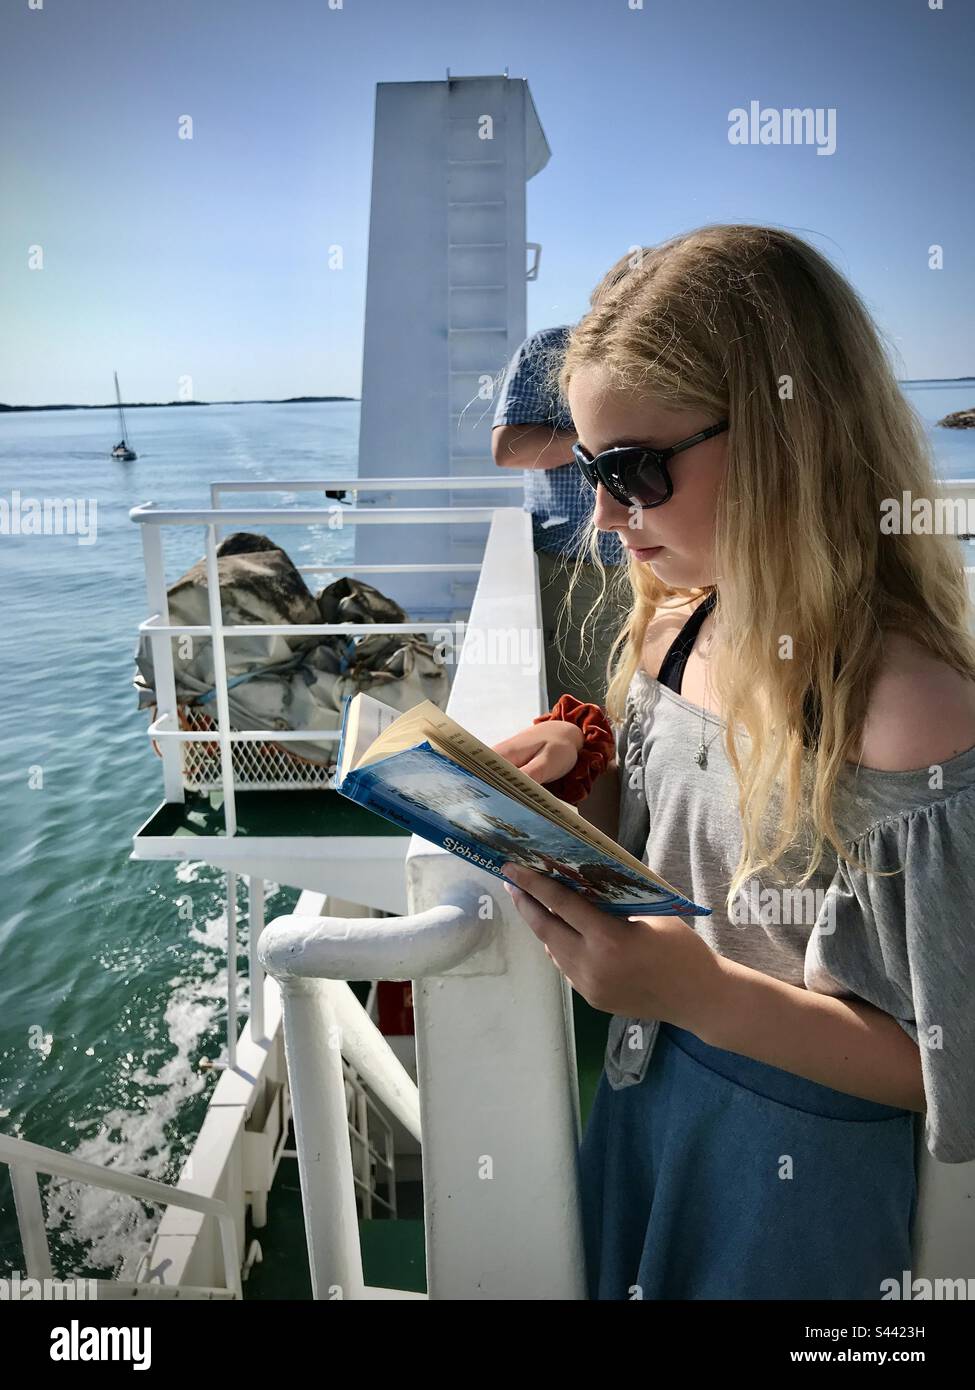 Bücherwurm eines jungen 10-jährigen Mädchens, das im Sommer auf einem öffentlichen Kreuzfahrtschiff auf den Åland-Inseln an der Ostsee ein Buch liest Stockfoto